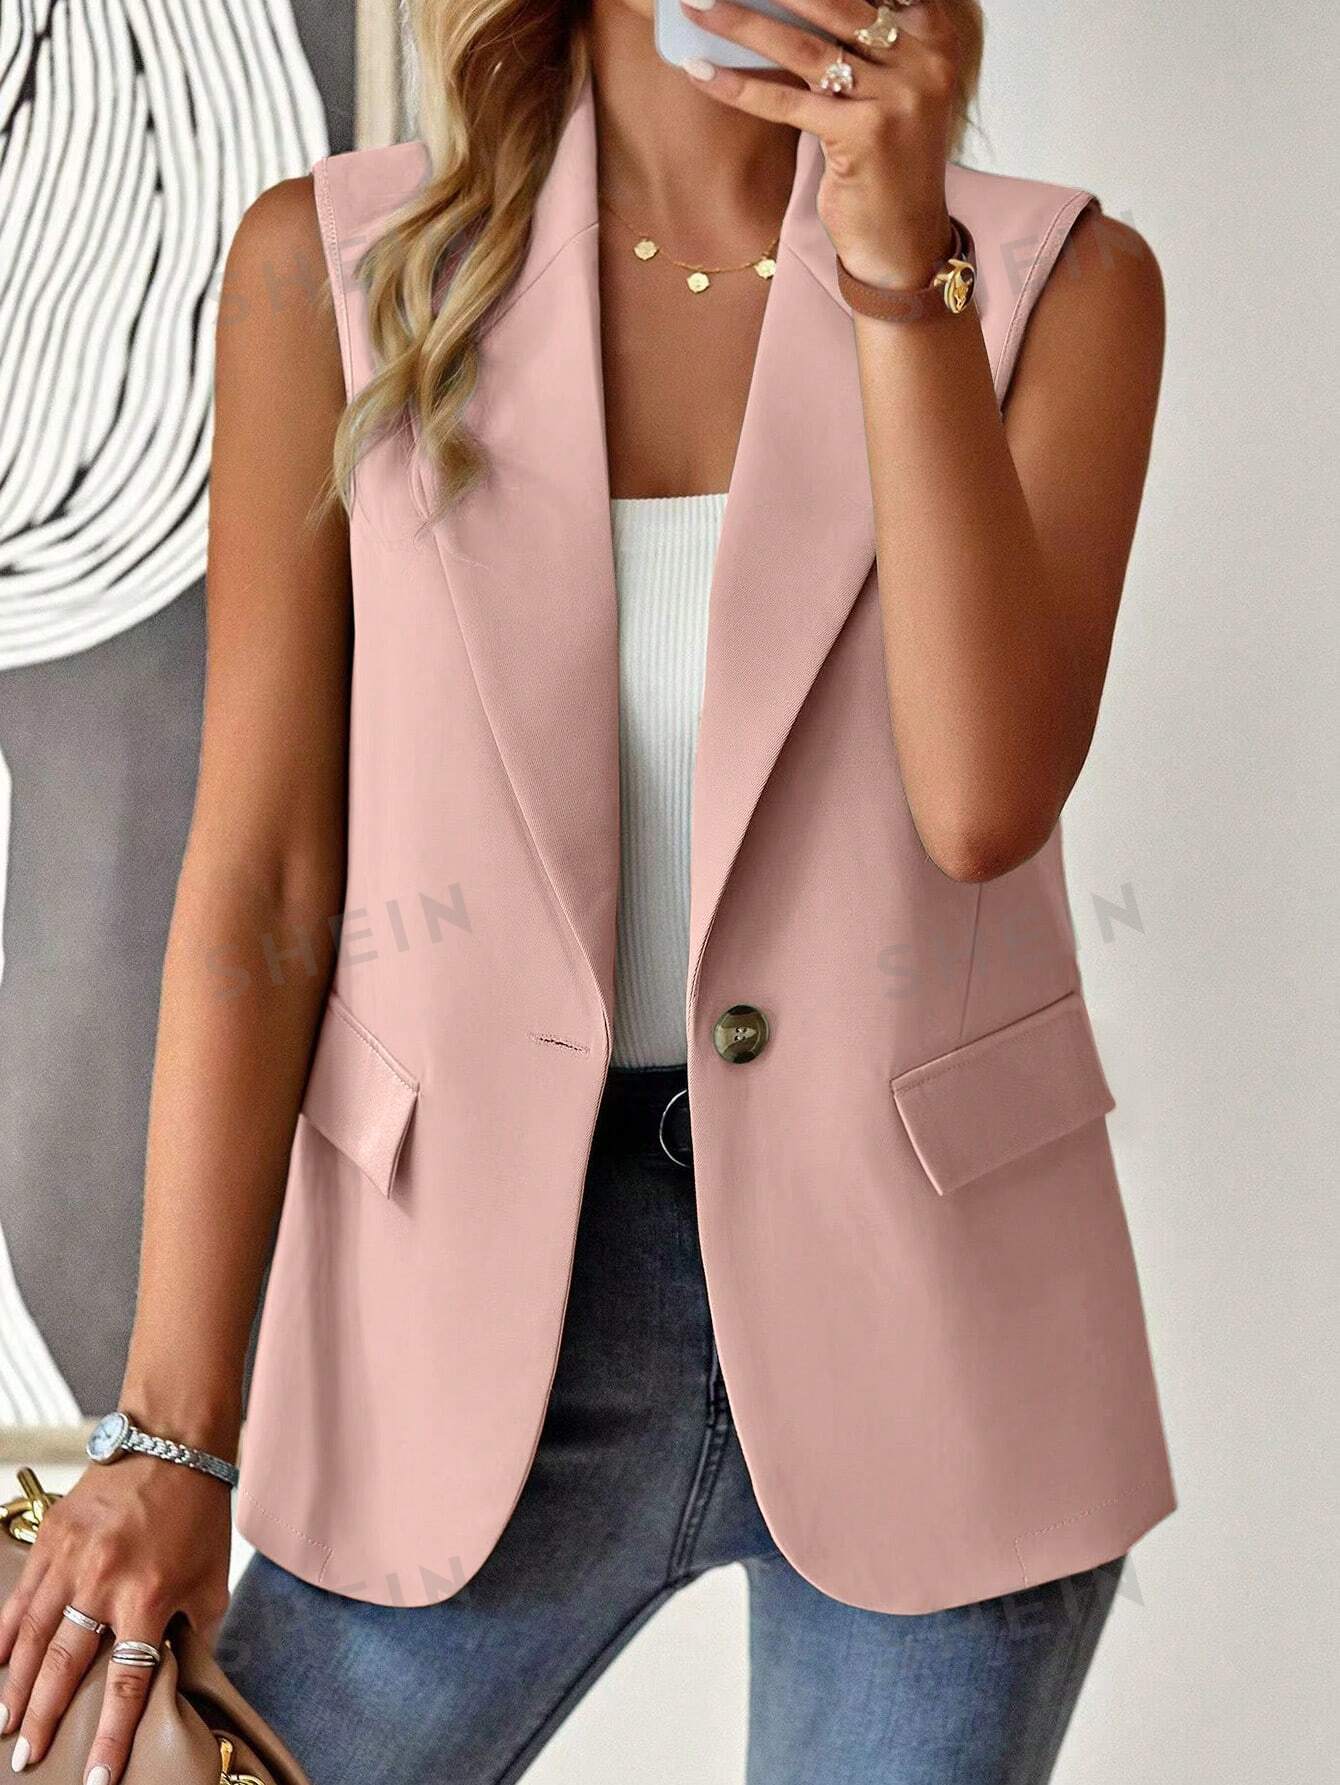 SHEIN Frenchy женский однотонный пиджак в стиле жилета с зубчатыми лацканами, розовый однобортный жилет без рукавов debenhams розовый